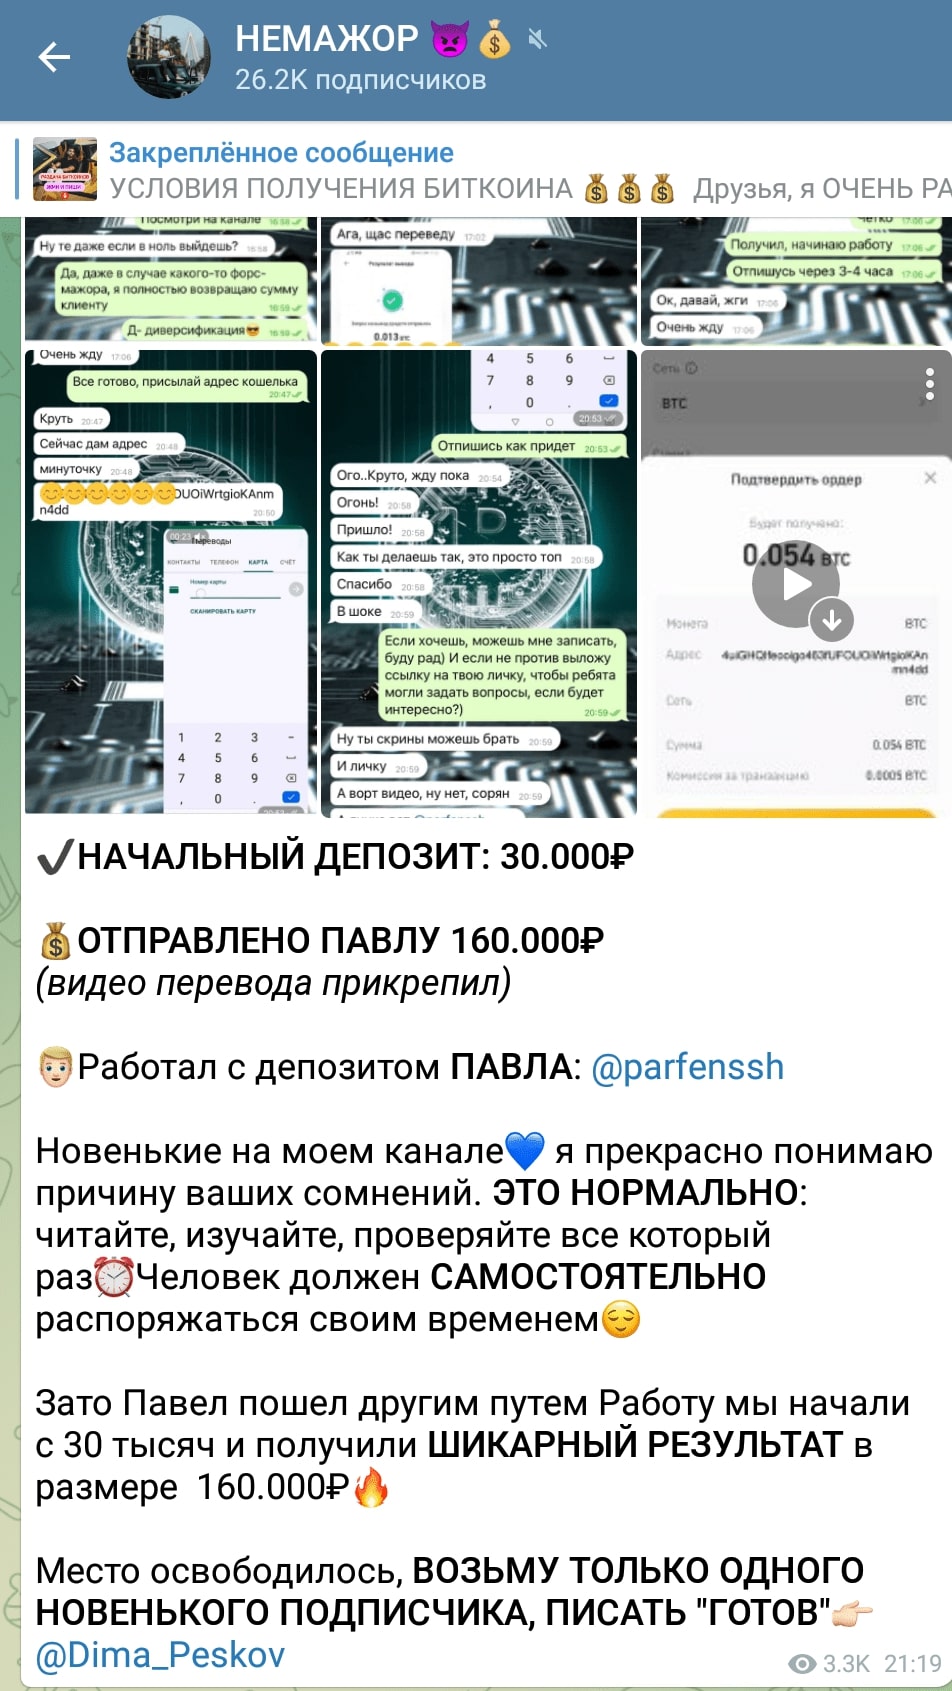 Дмитрий Песков телеграмм